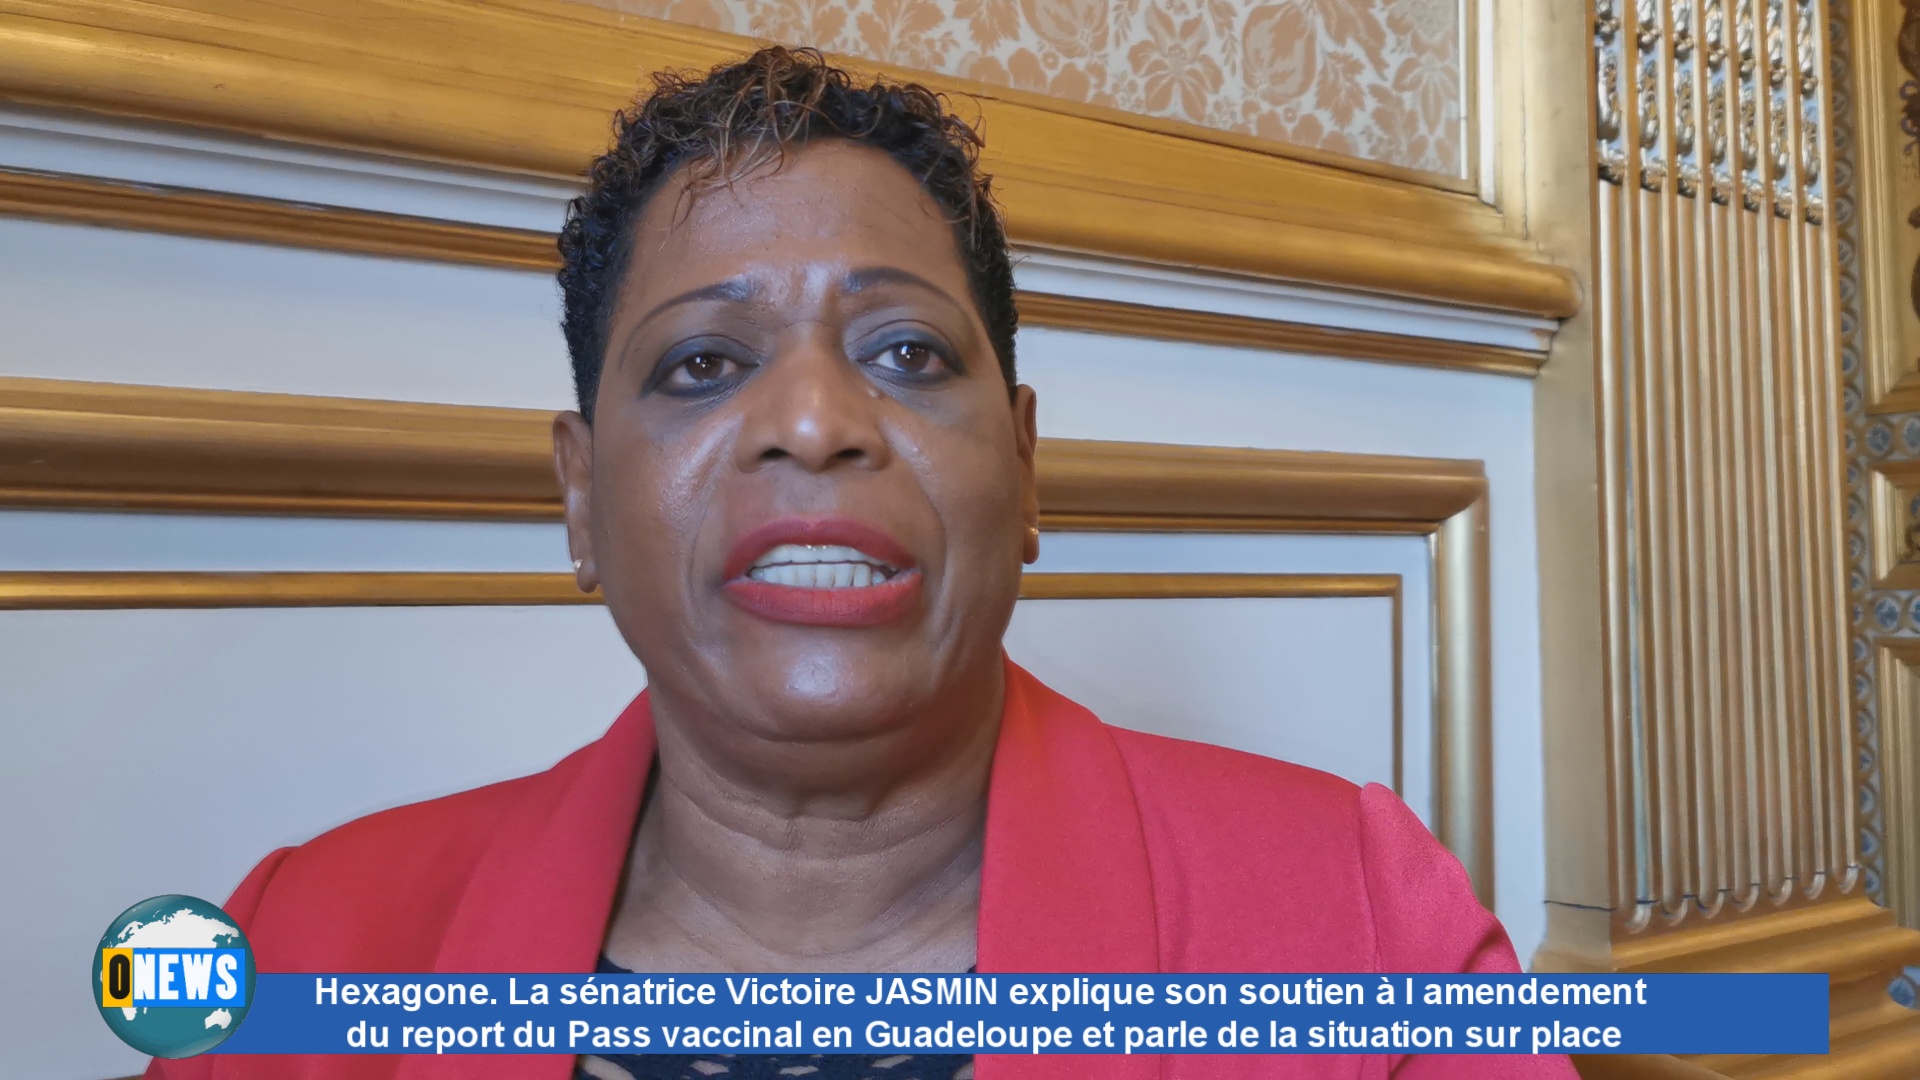 [Vidéo] Hexagone. La sénatrice Victoire JASMIN explique son soutien à l amendement du pass vaccinal pour un report d application concernant la Guadeloupe